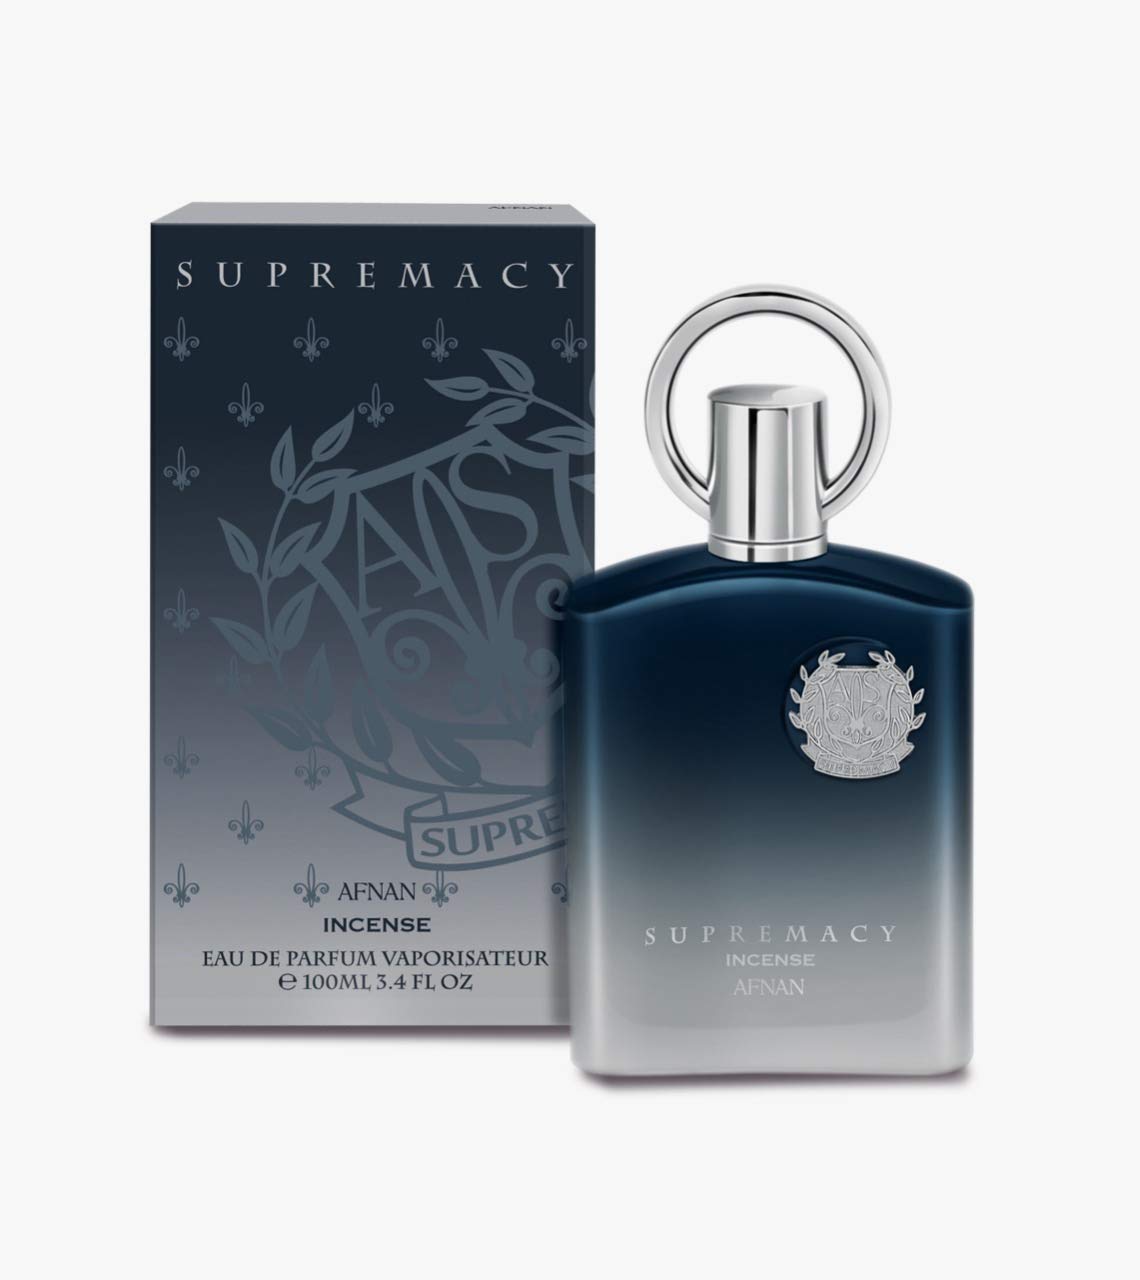 Supremacy Incense Eau De Parfum - 100ML (3.4Oz) by Afnan - Intense Oud